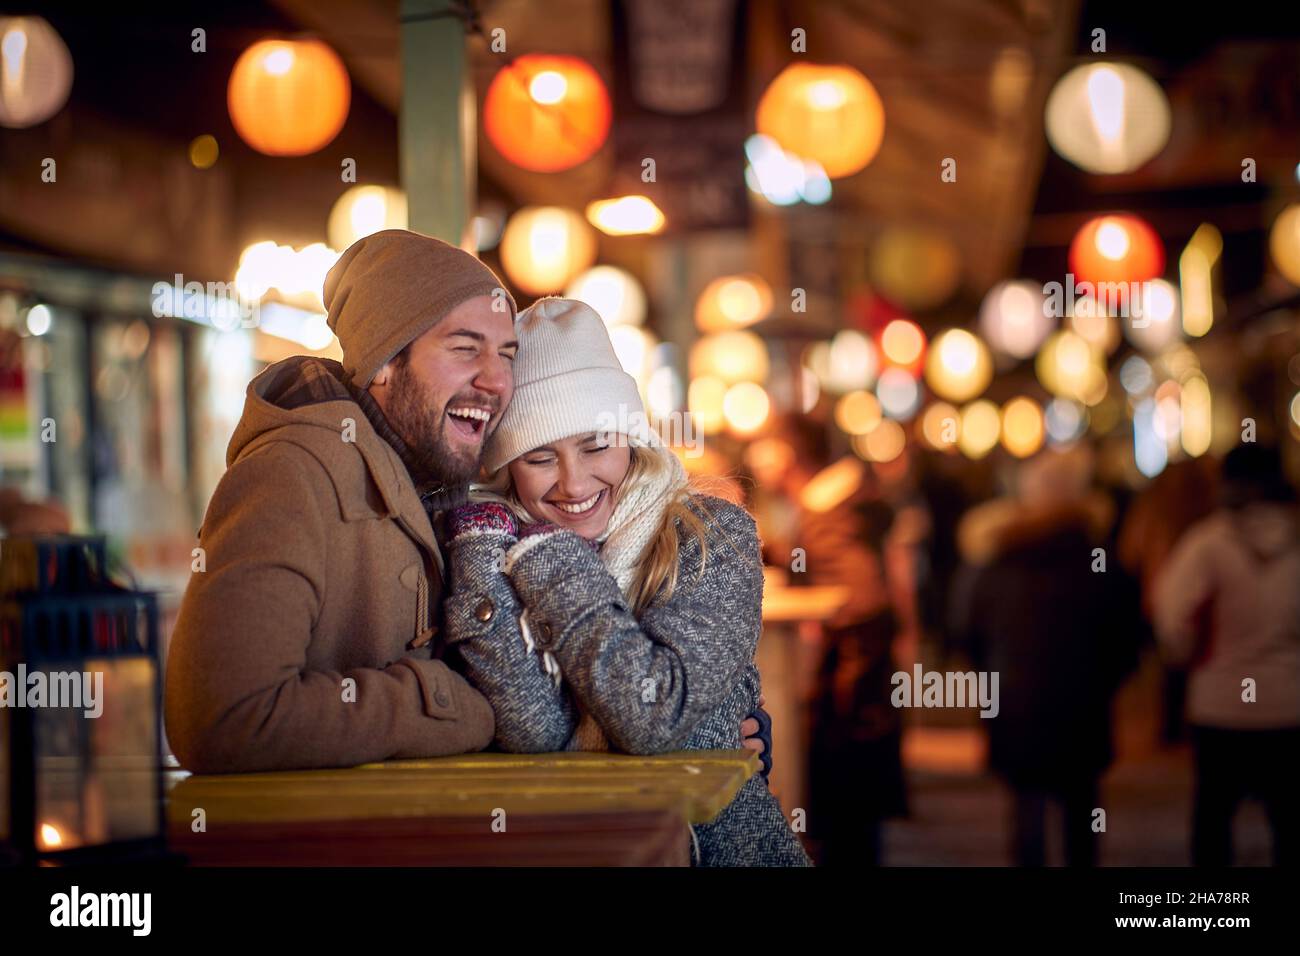 Schönes Paar teilt glückliche Momente zusammen; Weihnachtsfreude Konzept Stockfoto